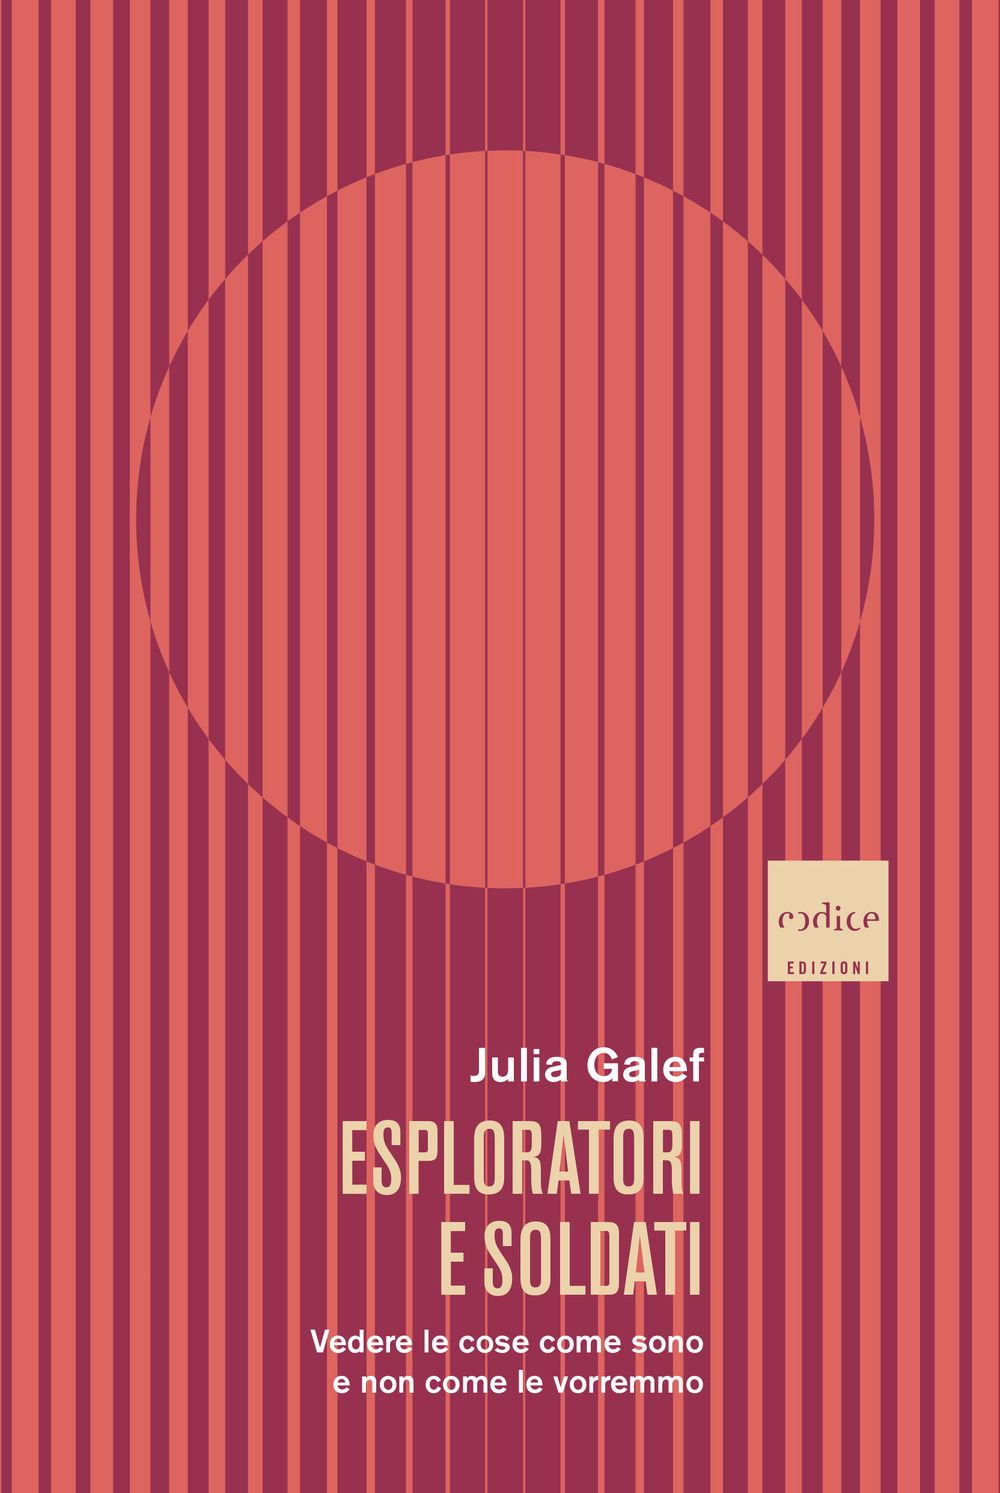 Libri Galef Julia - Esploratori E Soldati NUOVO SIGILLATO, EDIZIONE DEL 11/05/2022 SUBITO DISPONIBILE